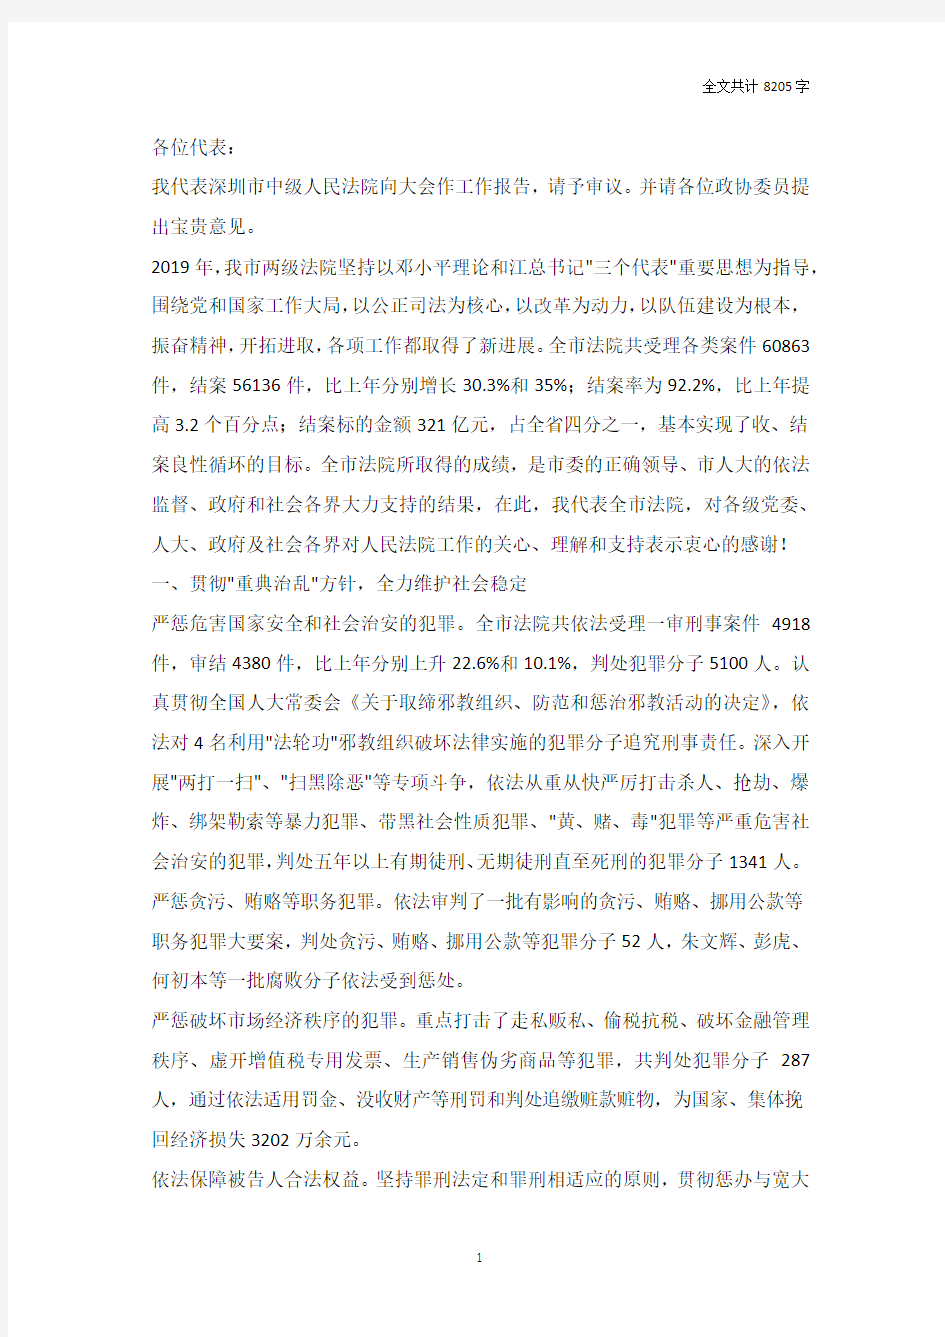 2019年深圳市中级人民法院工作报告